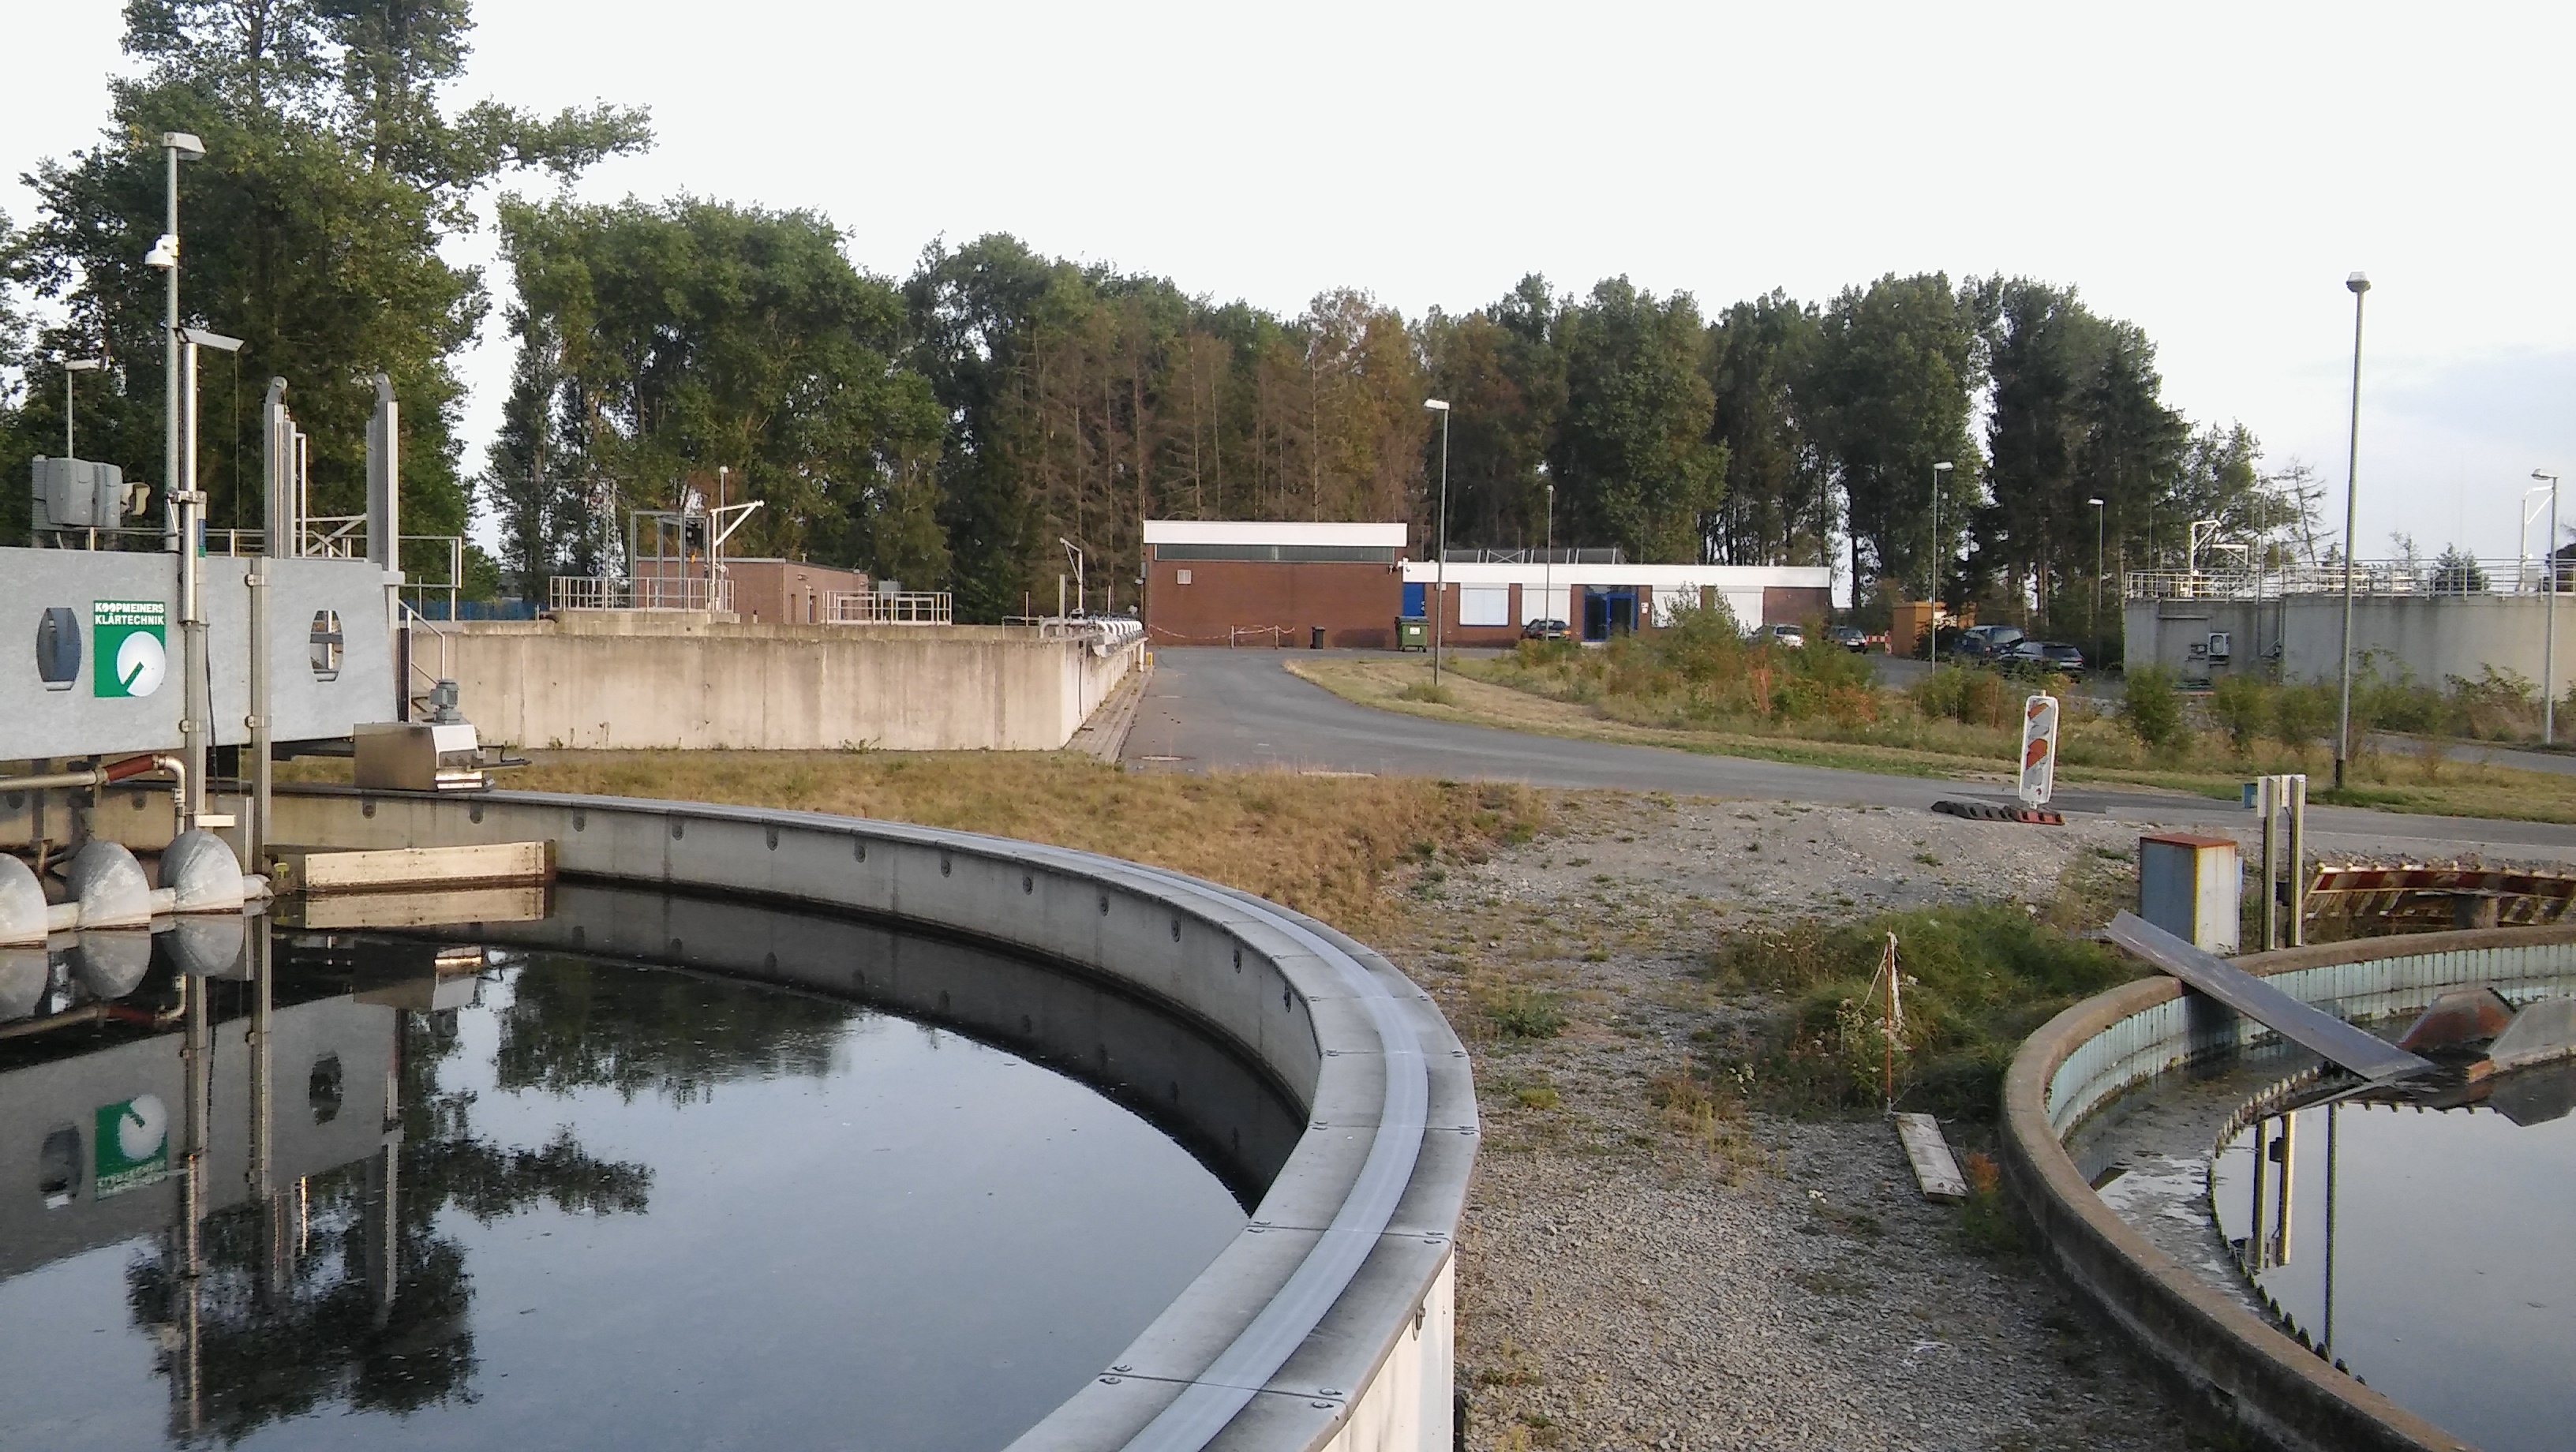 Auf der Kläranlage Wolfsburg-Hattorf wurde die Pilotierung der Abwasserreinigung sowie ein hydroponisches System zwischen 2017 und 2019 betrieben.